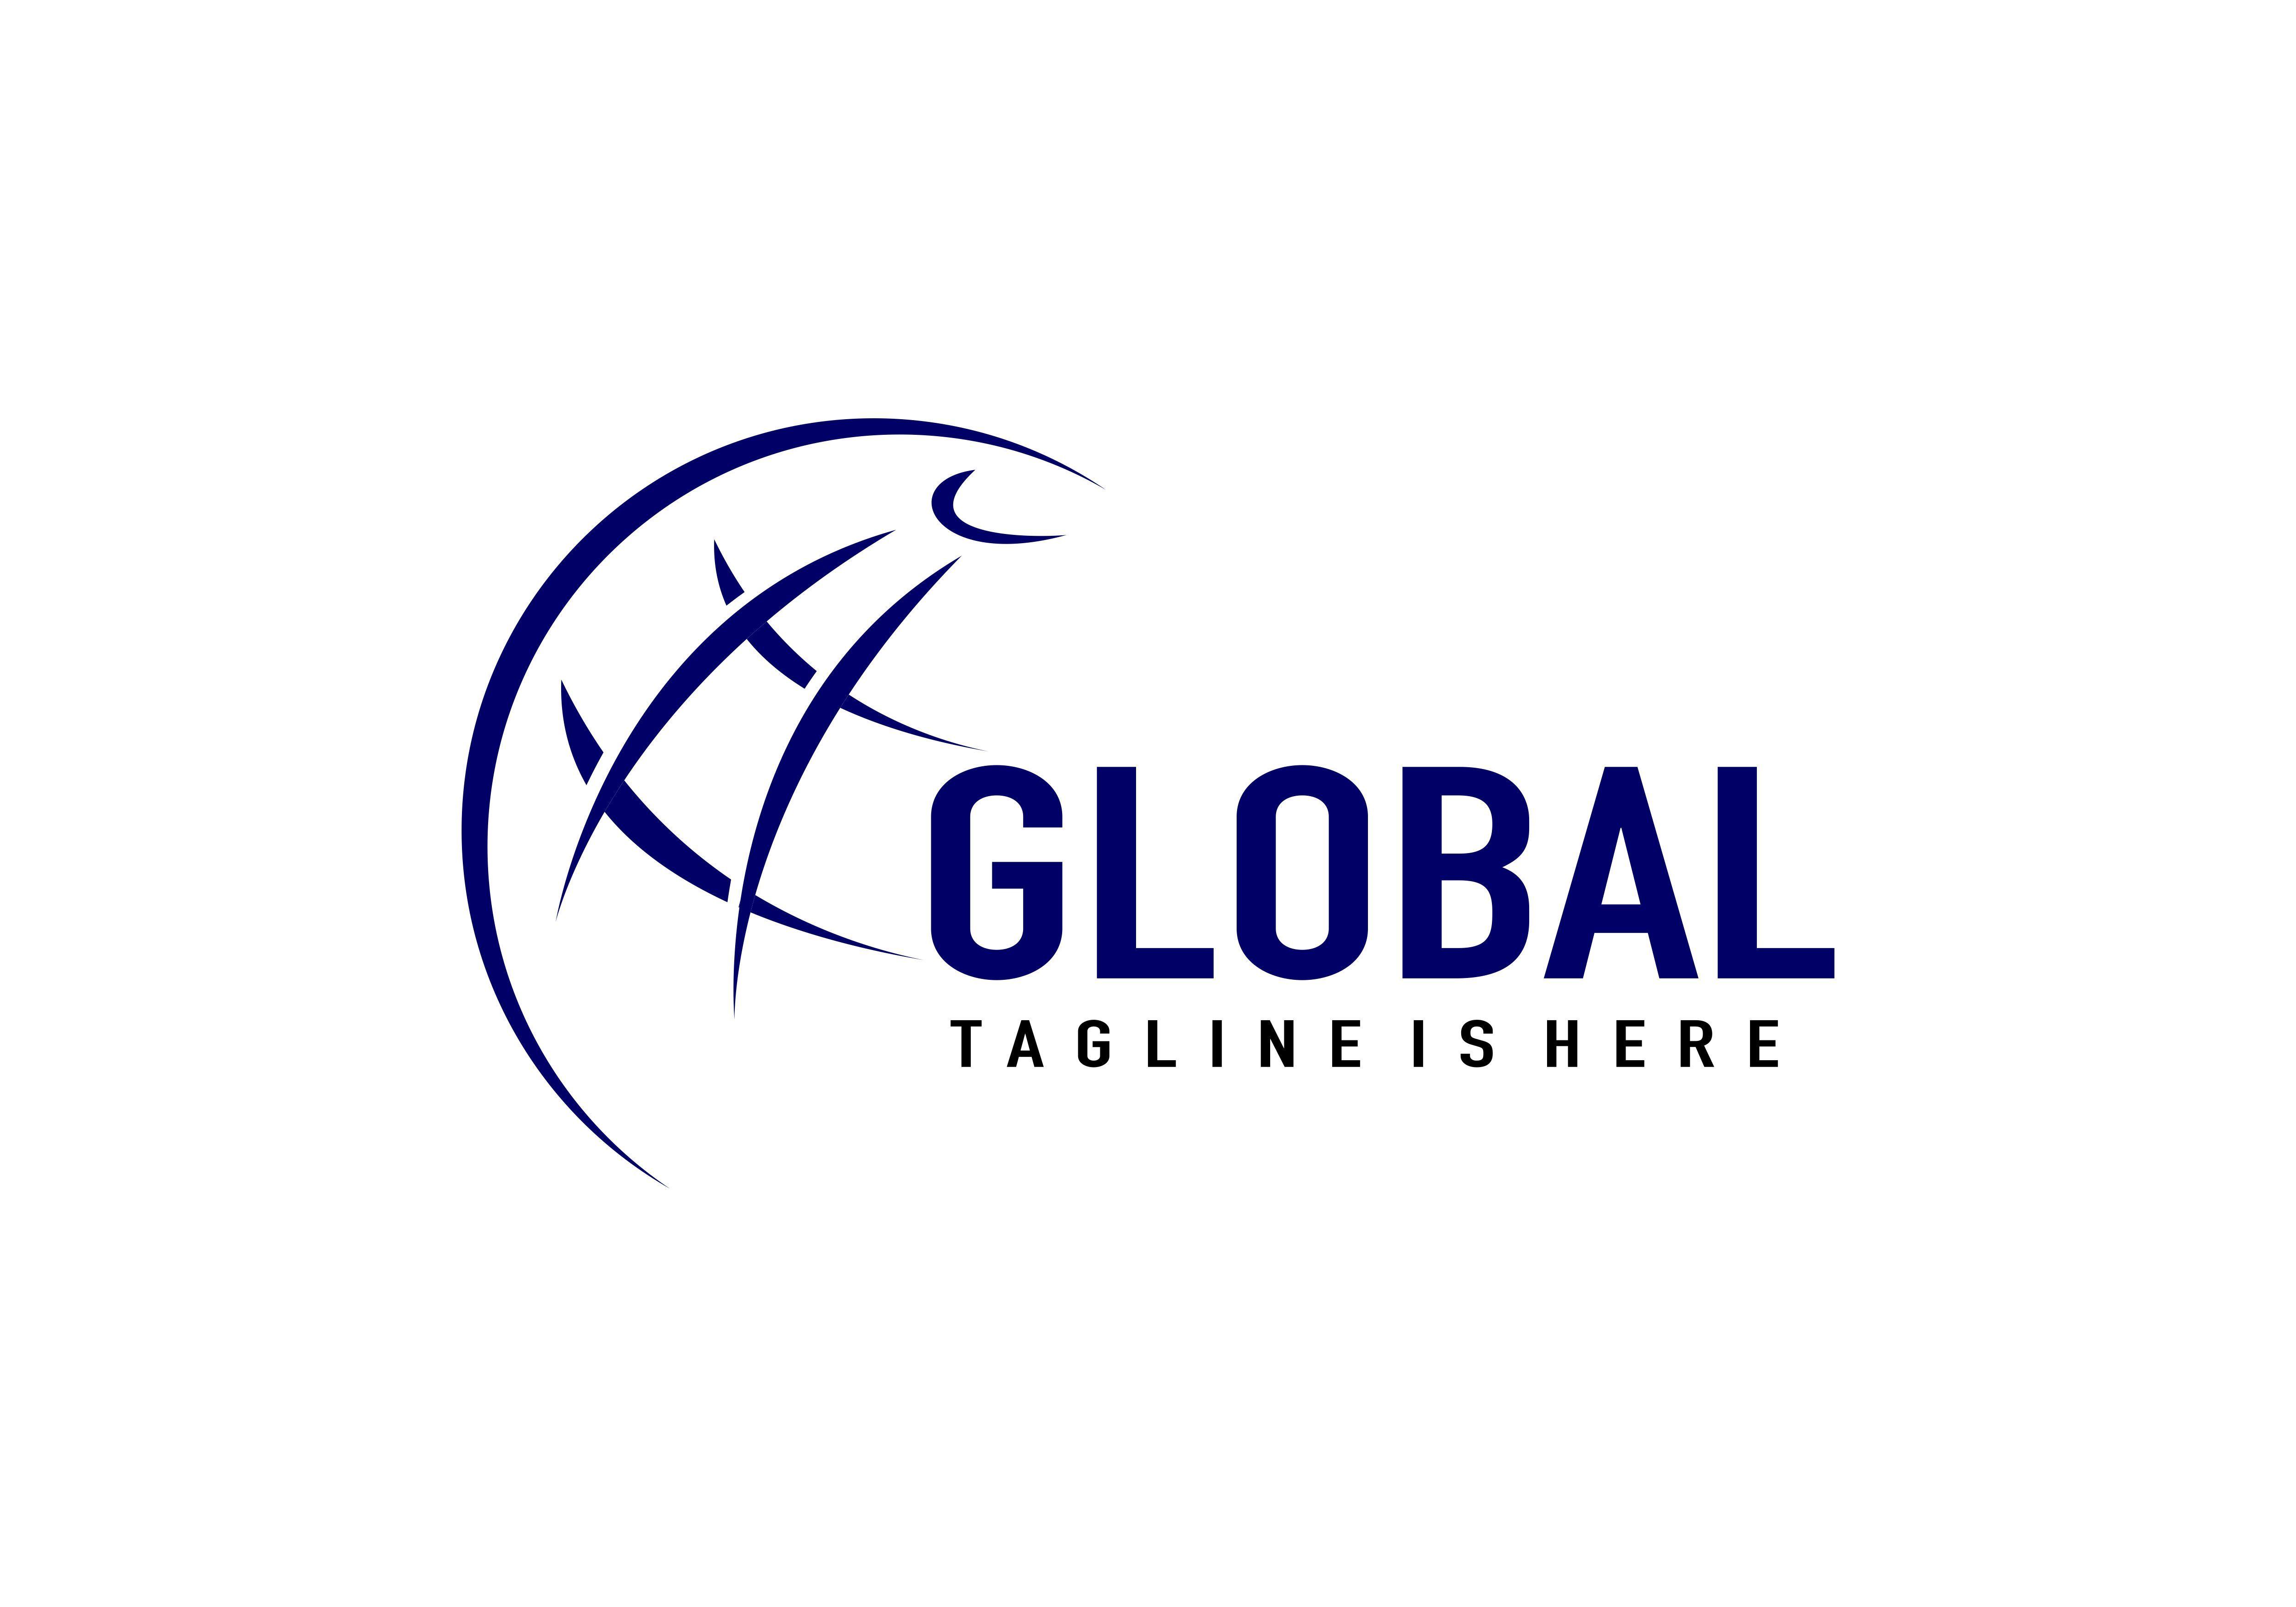 Global Business Logo - Global, business logo Graphic